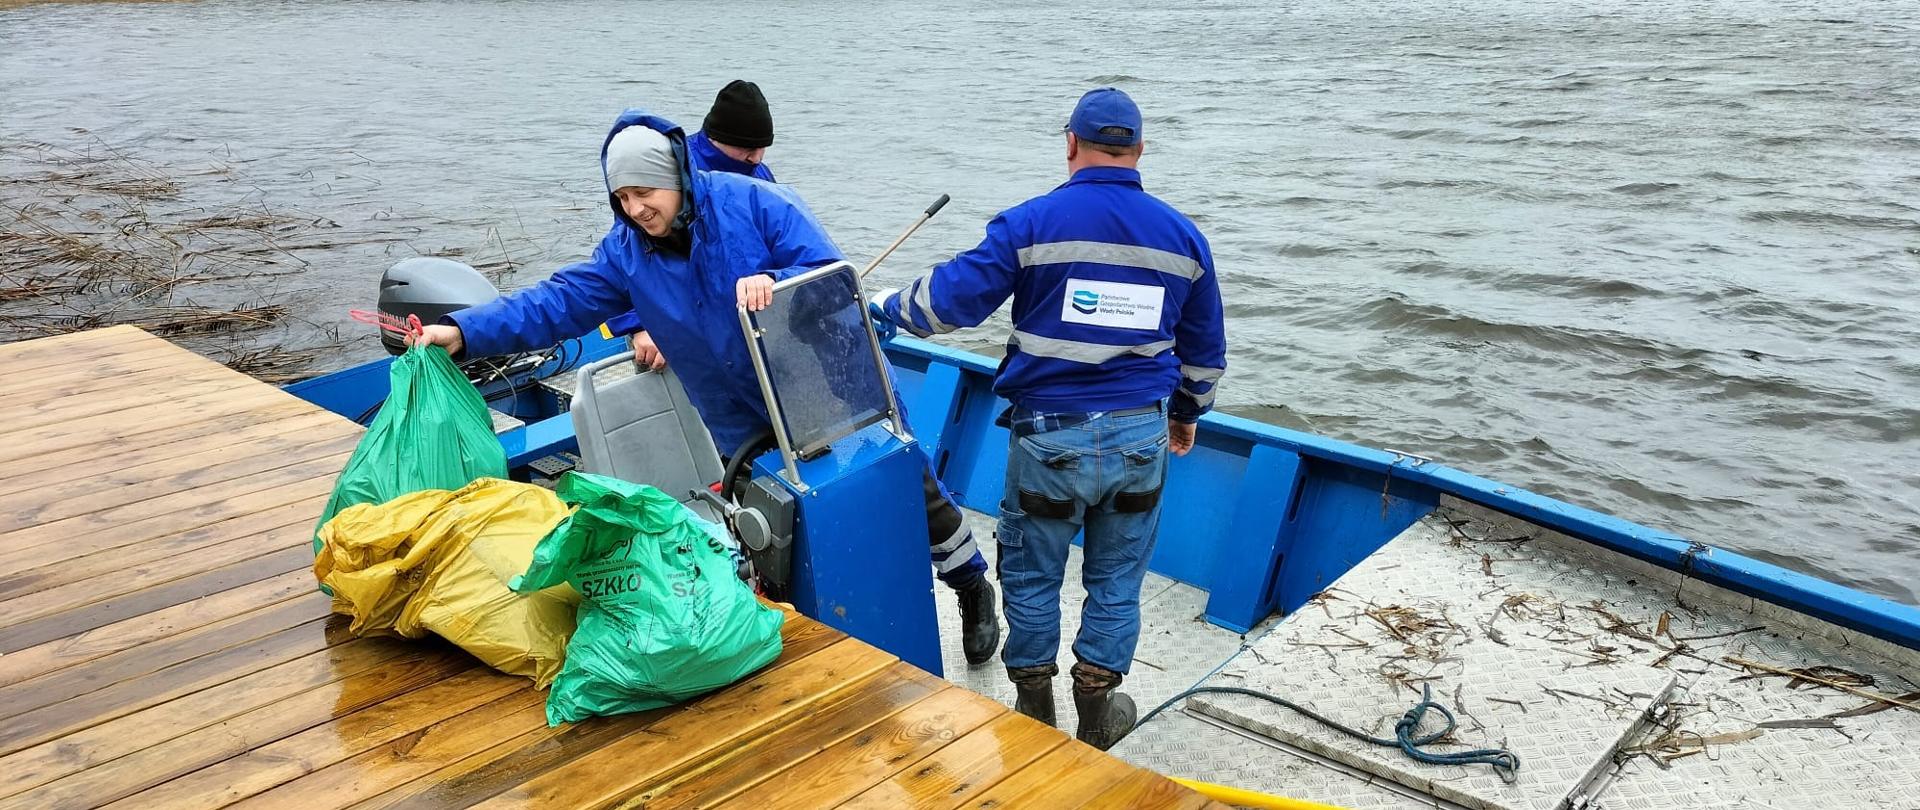 Trzech pracowników Wód Polskich stoi w łódce przy pomoście. Z łodzi wyrzucają na brzeg worki ze śmieciami. 